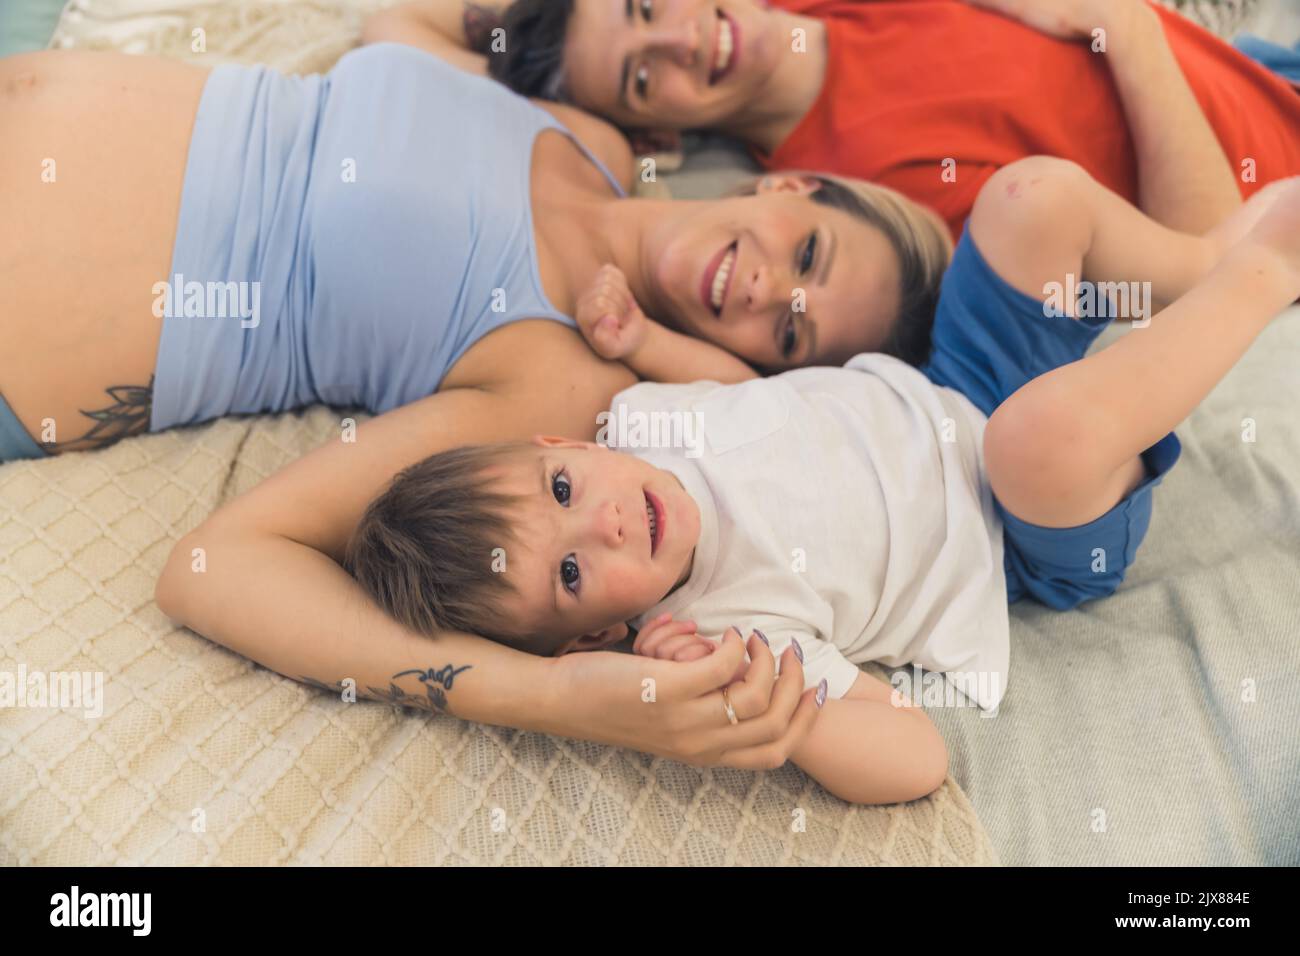 Relazioni familiari sane. Coppia eterosessuale caucasica sposata sdraiata sul letto con il figlio di quattro anni e solletico l'un l'altro. Foto di alta qualità Foto Stock